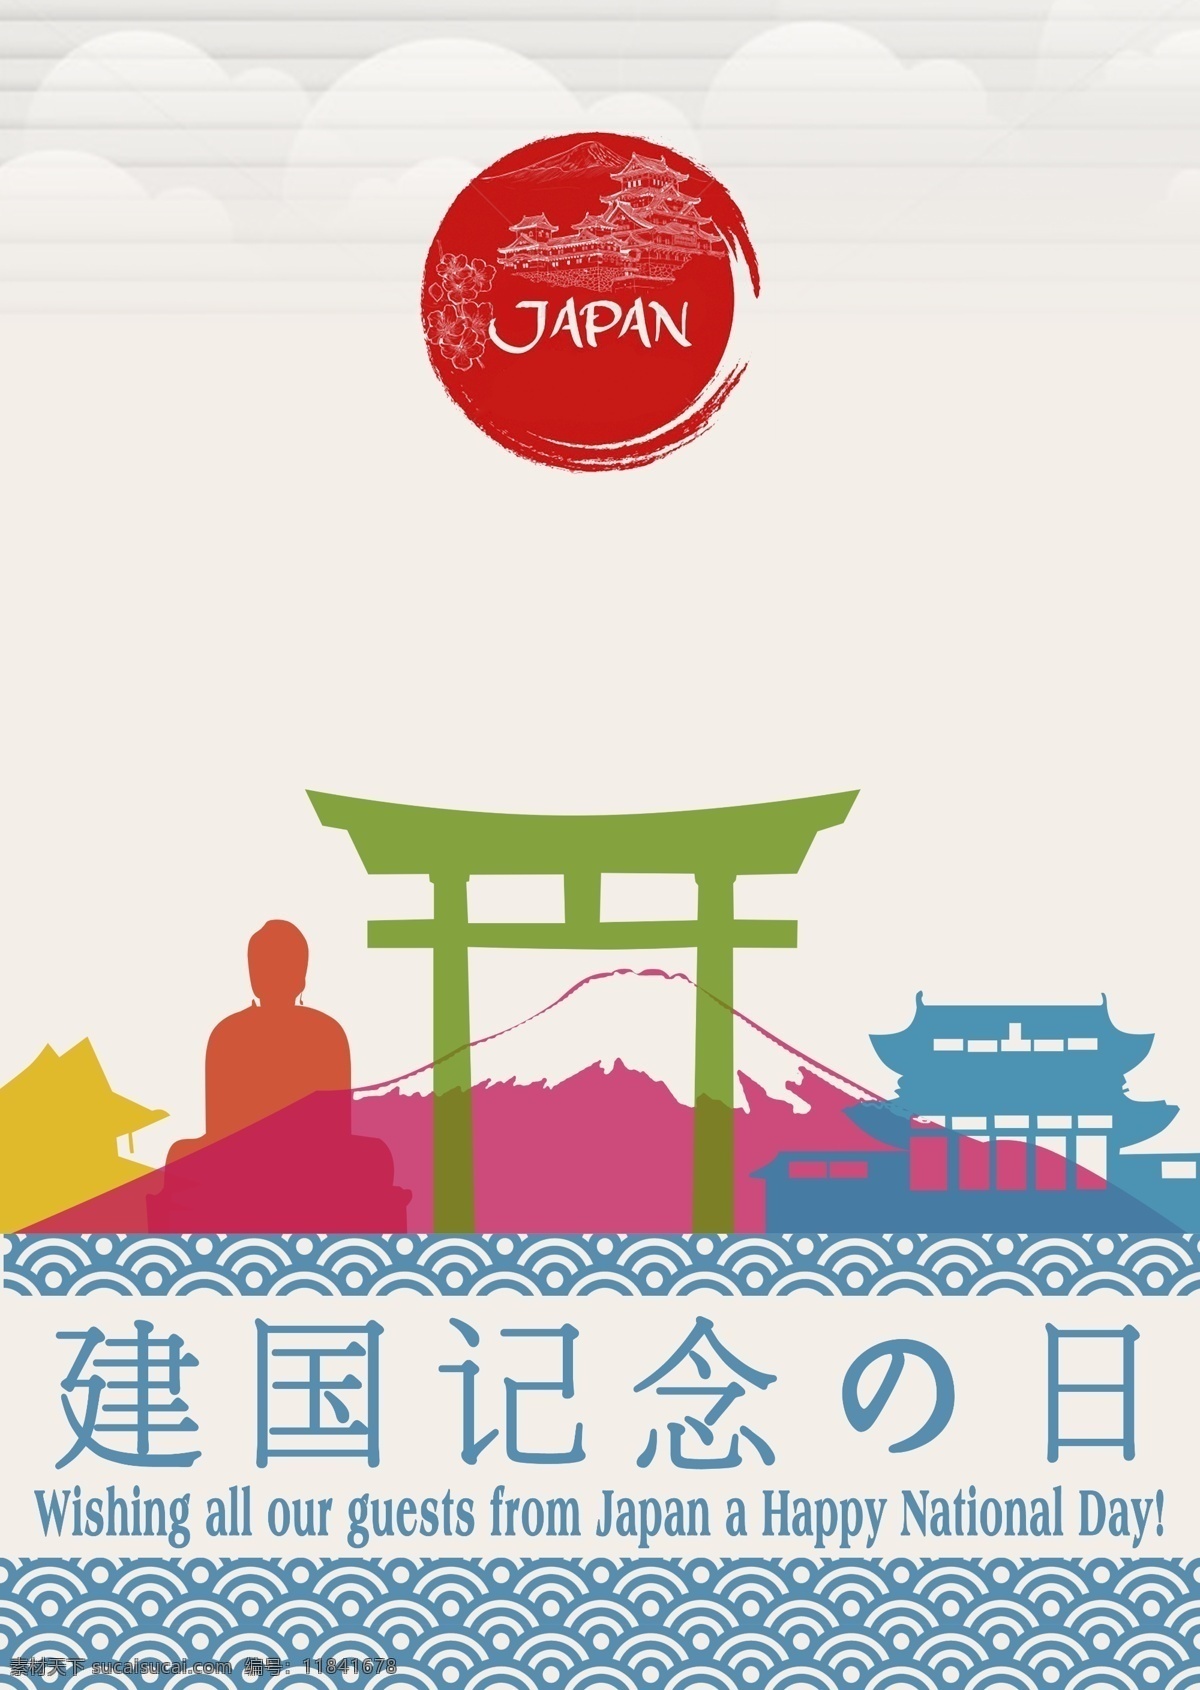 日本纪念日 日本 纪念日 日本元素 日本素材 小日本